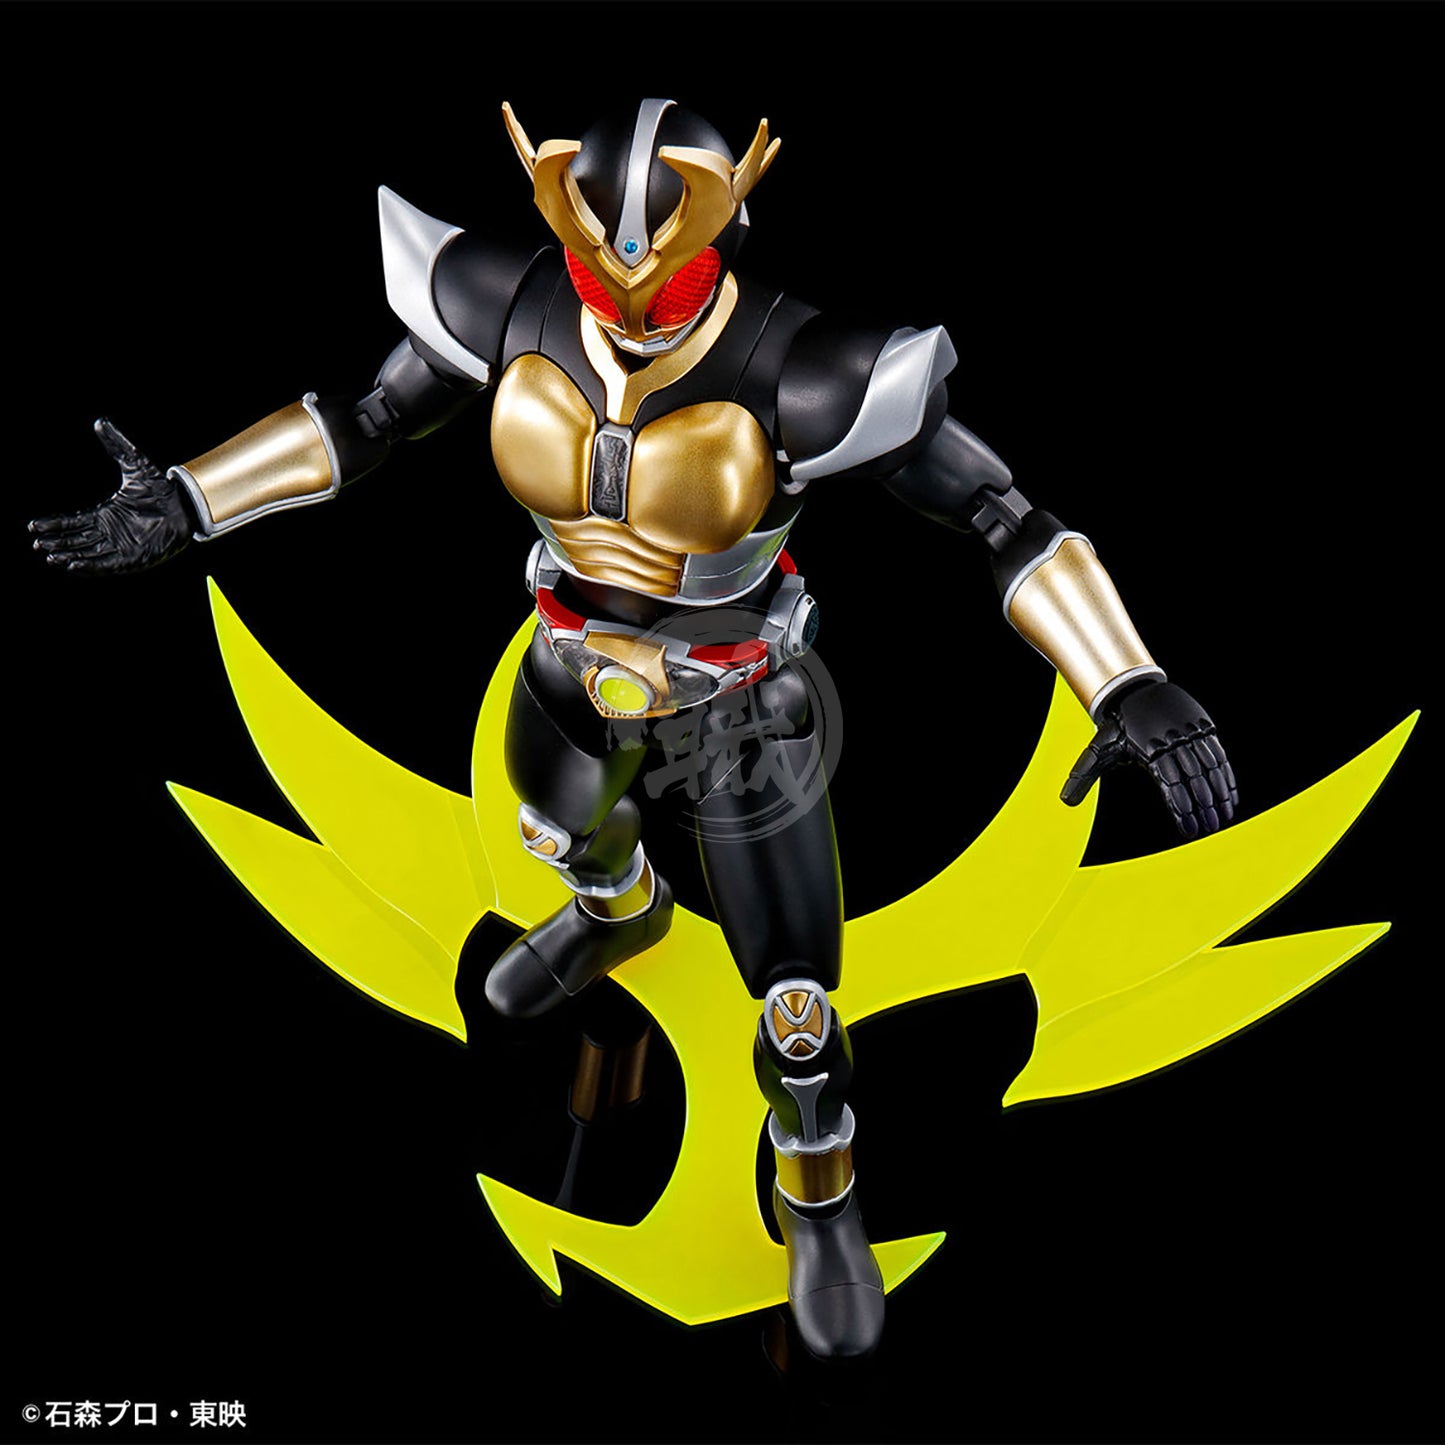 Figure-Rise Standard Masked Rider Agito [Ground Form] - ShokuninGunpla